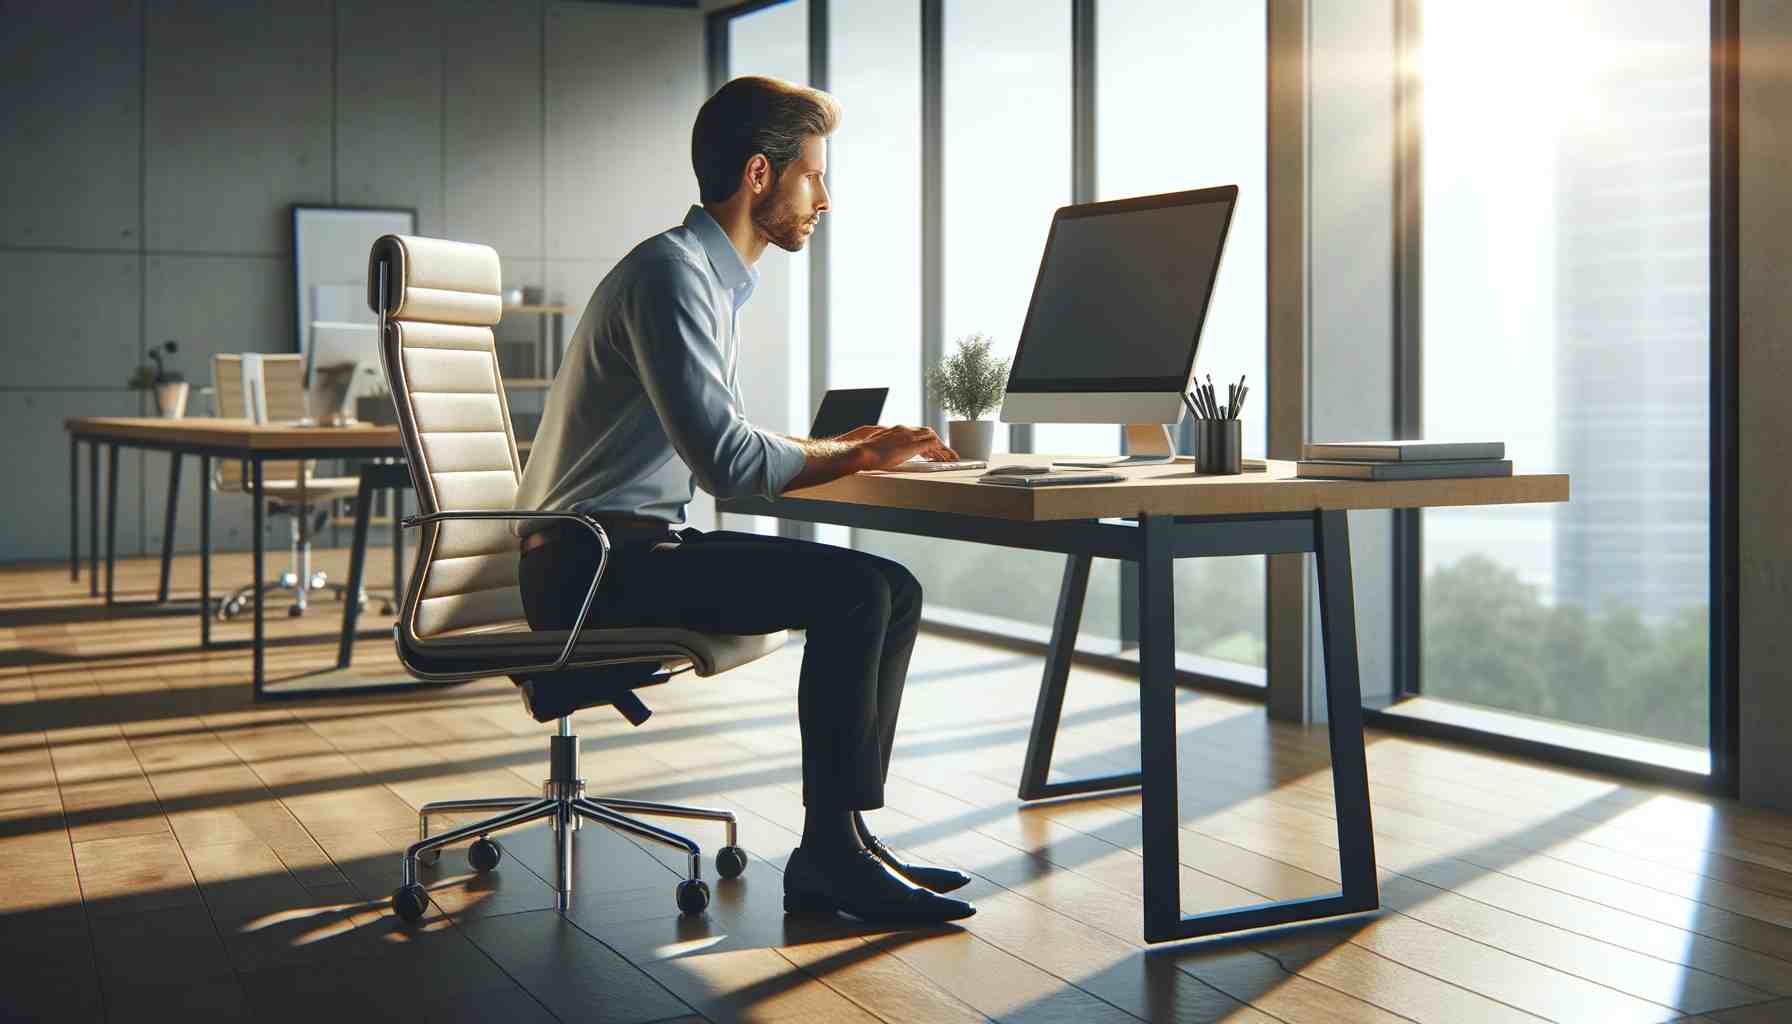 egy jól megvilágított irodában ülő, számítógépen gépelő személy valósághű képe. Az iroda modern és tágas, természetes fényáradattal.